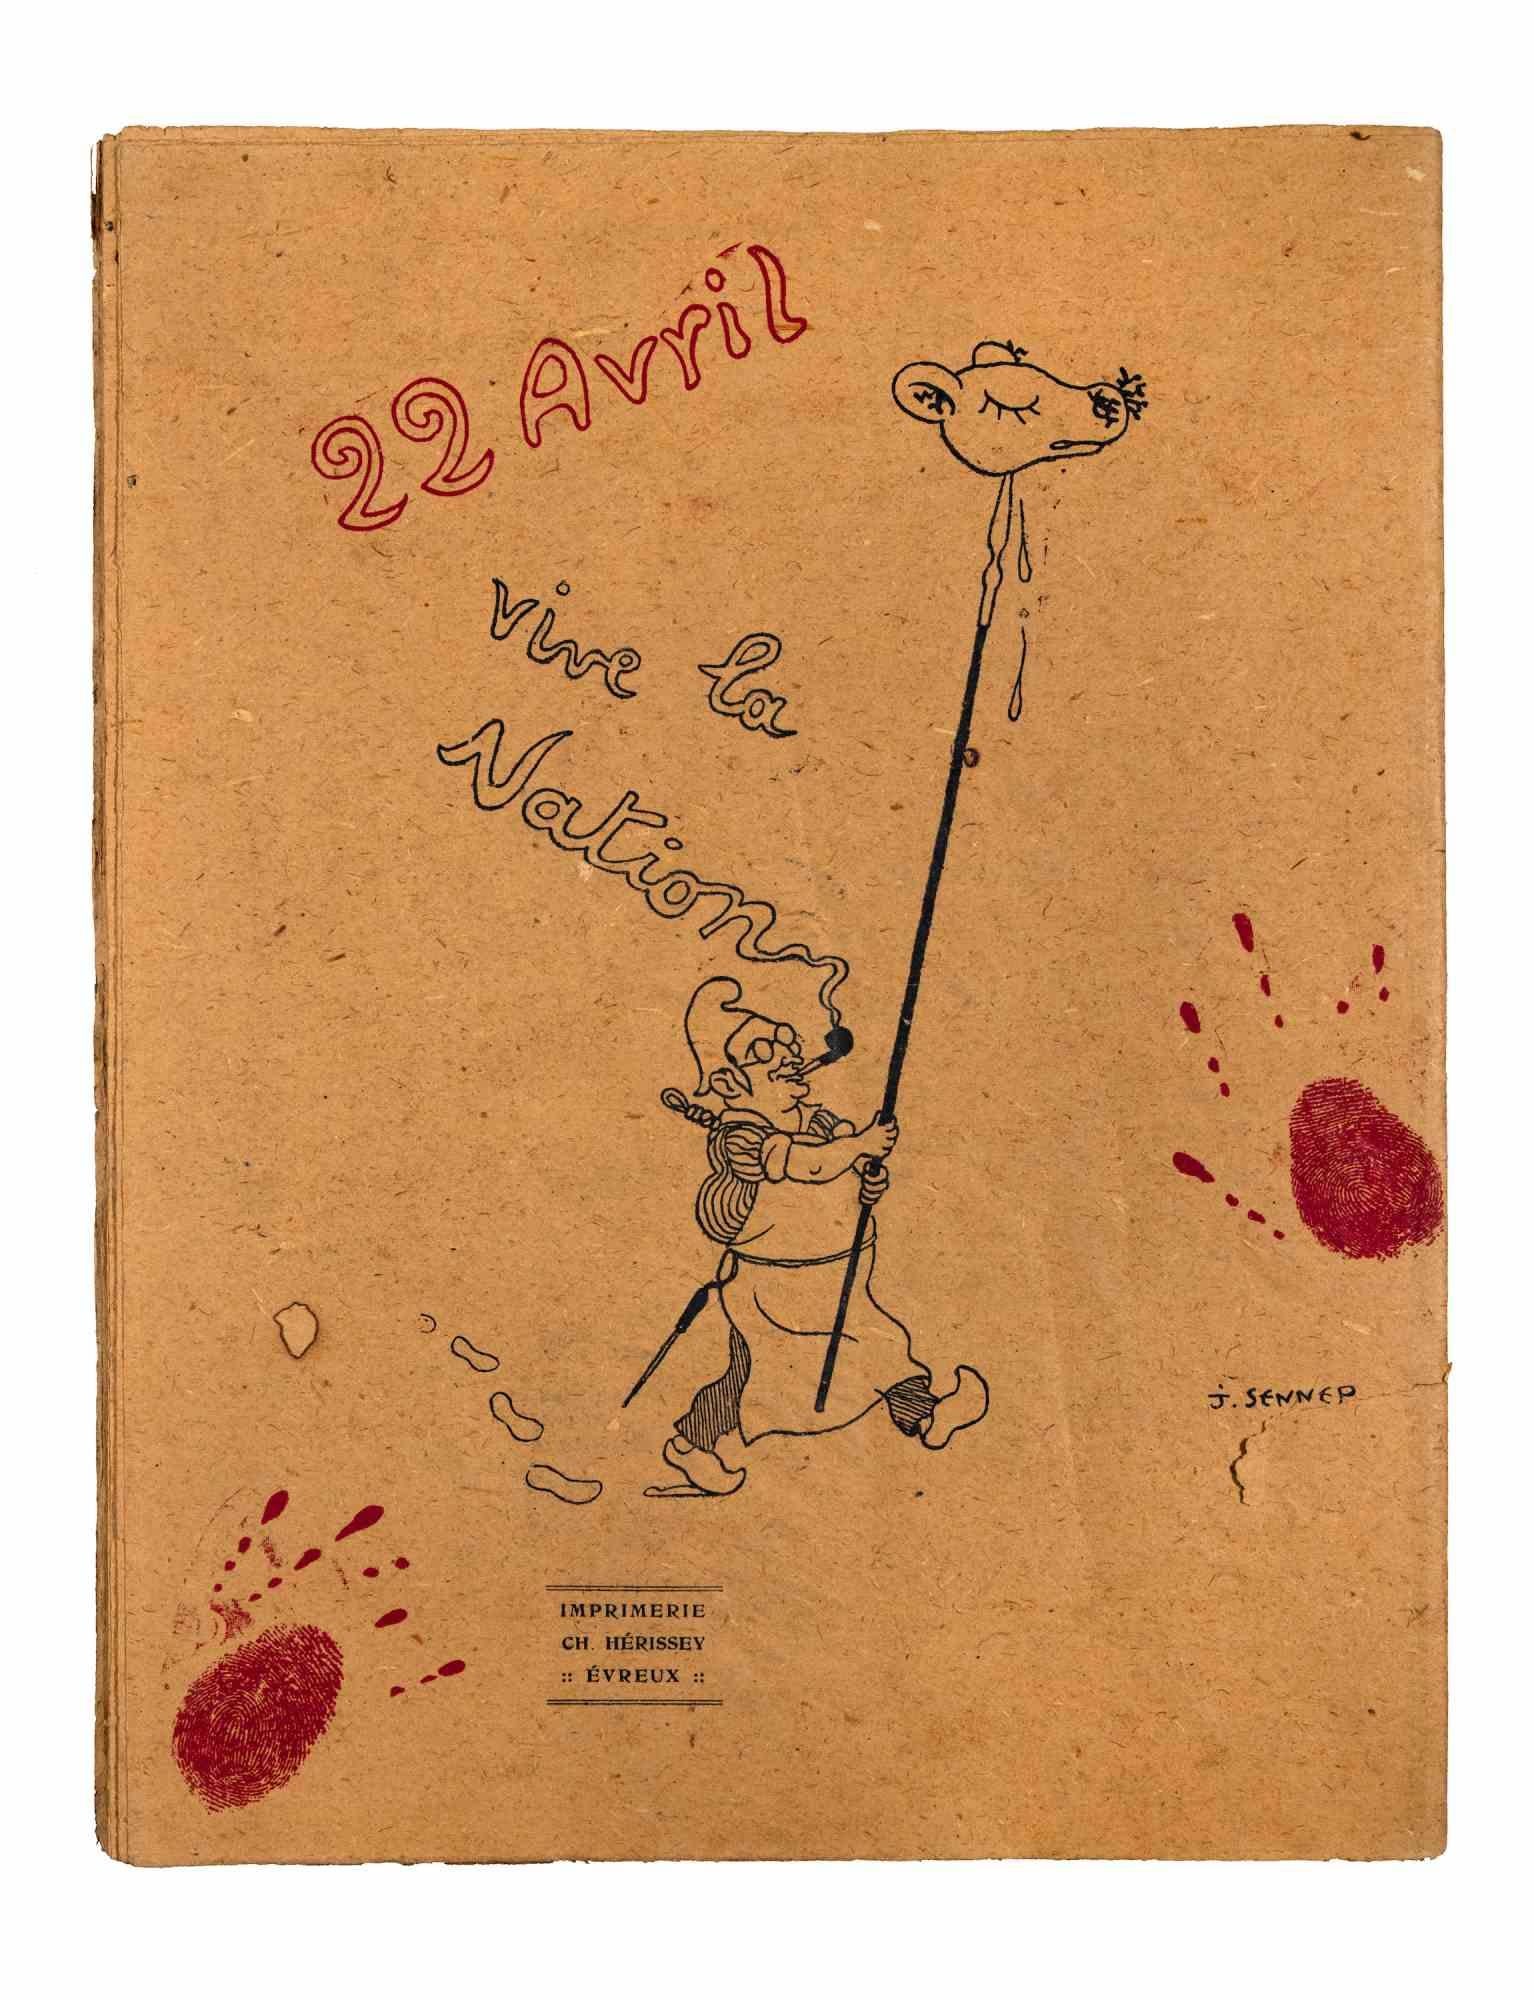 L'Abattoir Les Cartellistes - Illustriertes Buch von Jean-Jacques C. Penns - 1928 – Print von Jean-Jacques Charles Pennès